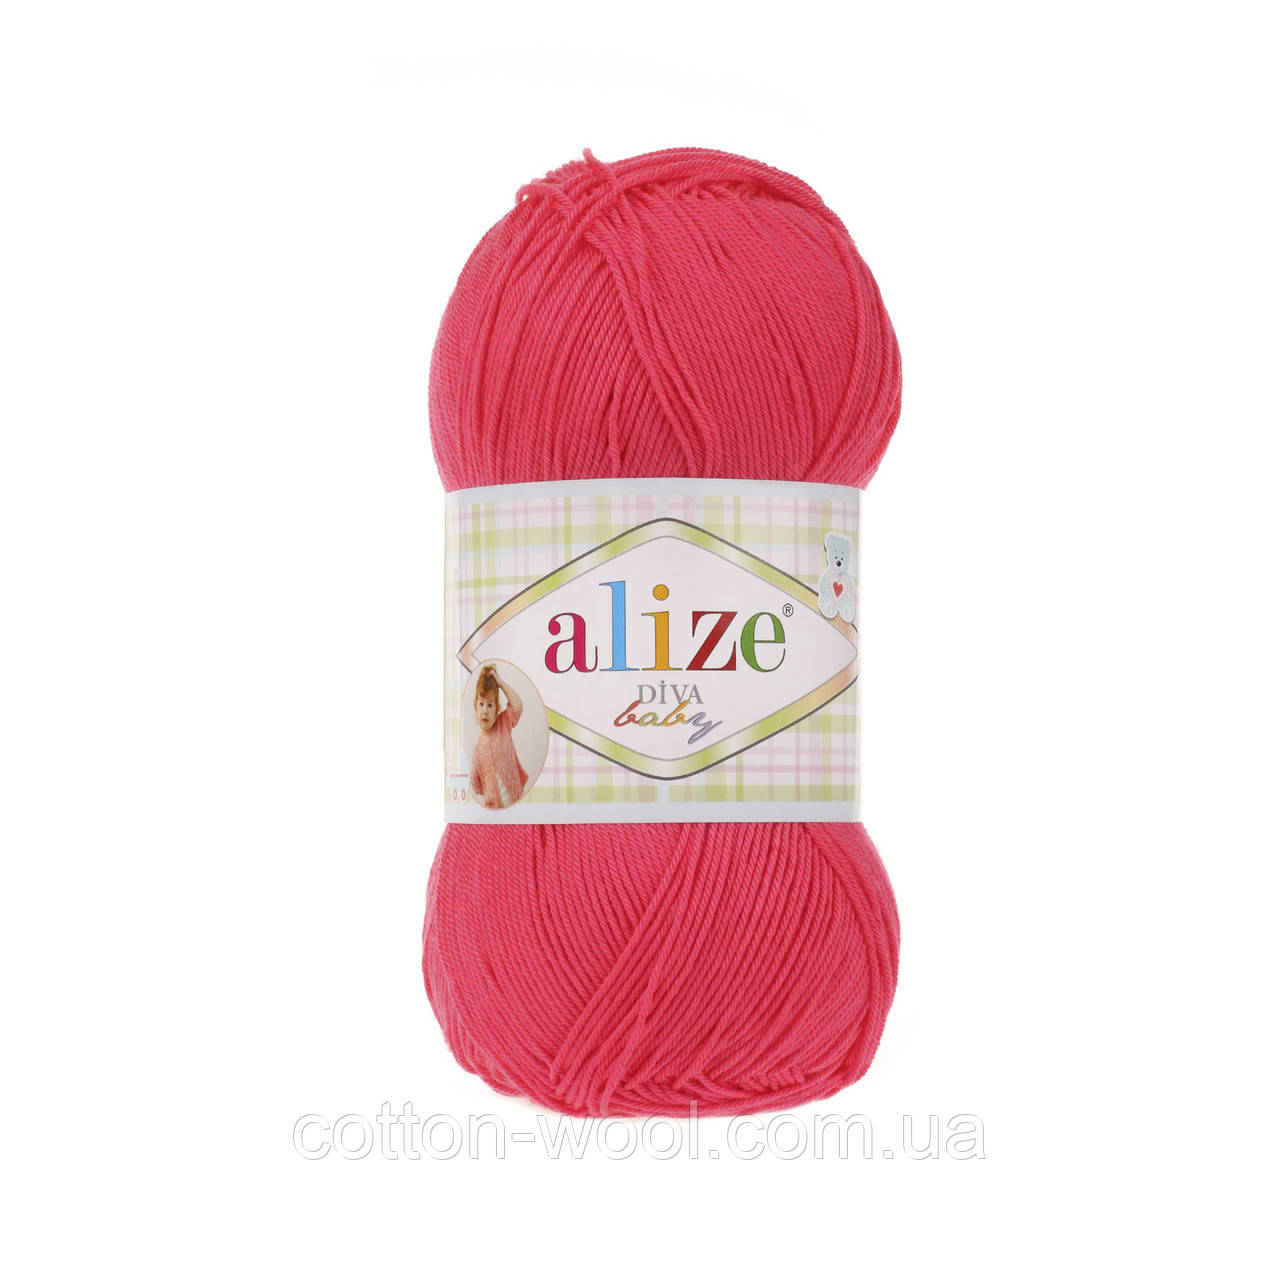 Alize Diva Baby (Дива Беби) 288 100% микрофибра акрил